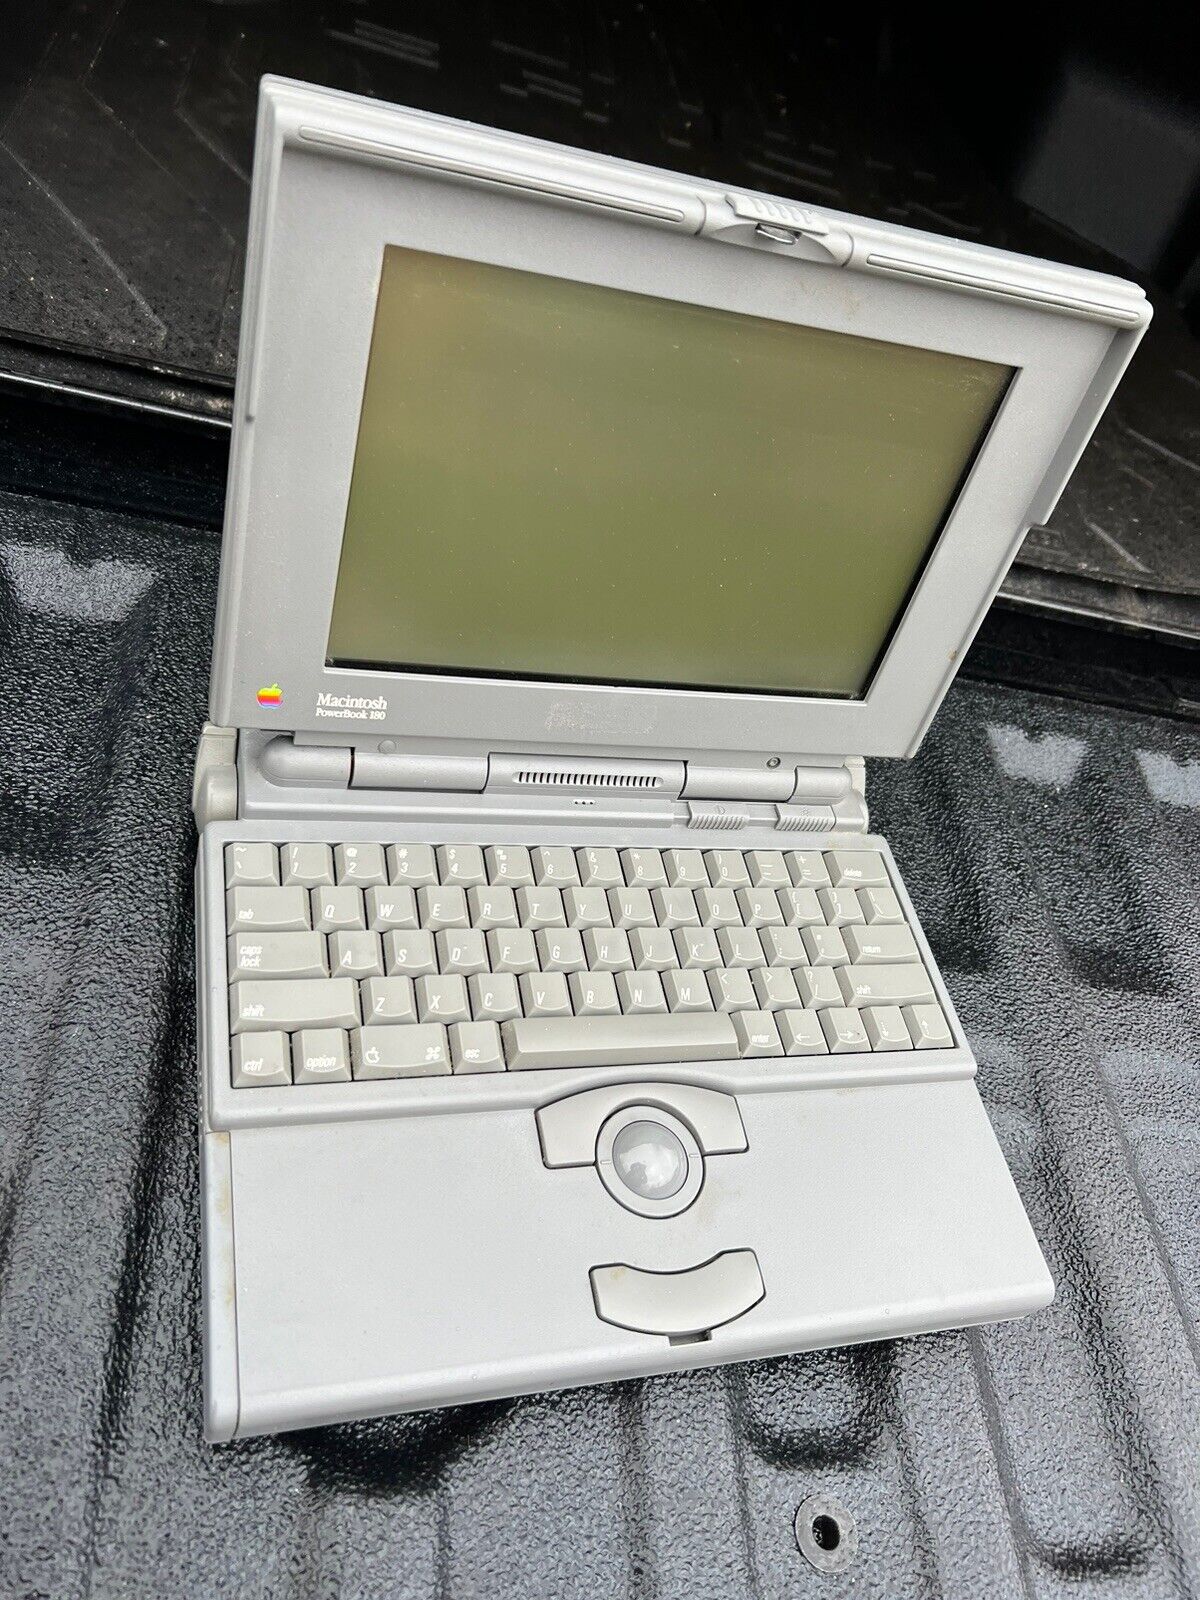 Apple PowerBook 180 Powers On 8MB RAM, 80 MB HD Vintage Macintosh “As-Is”